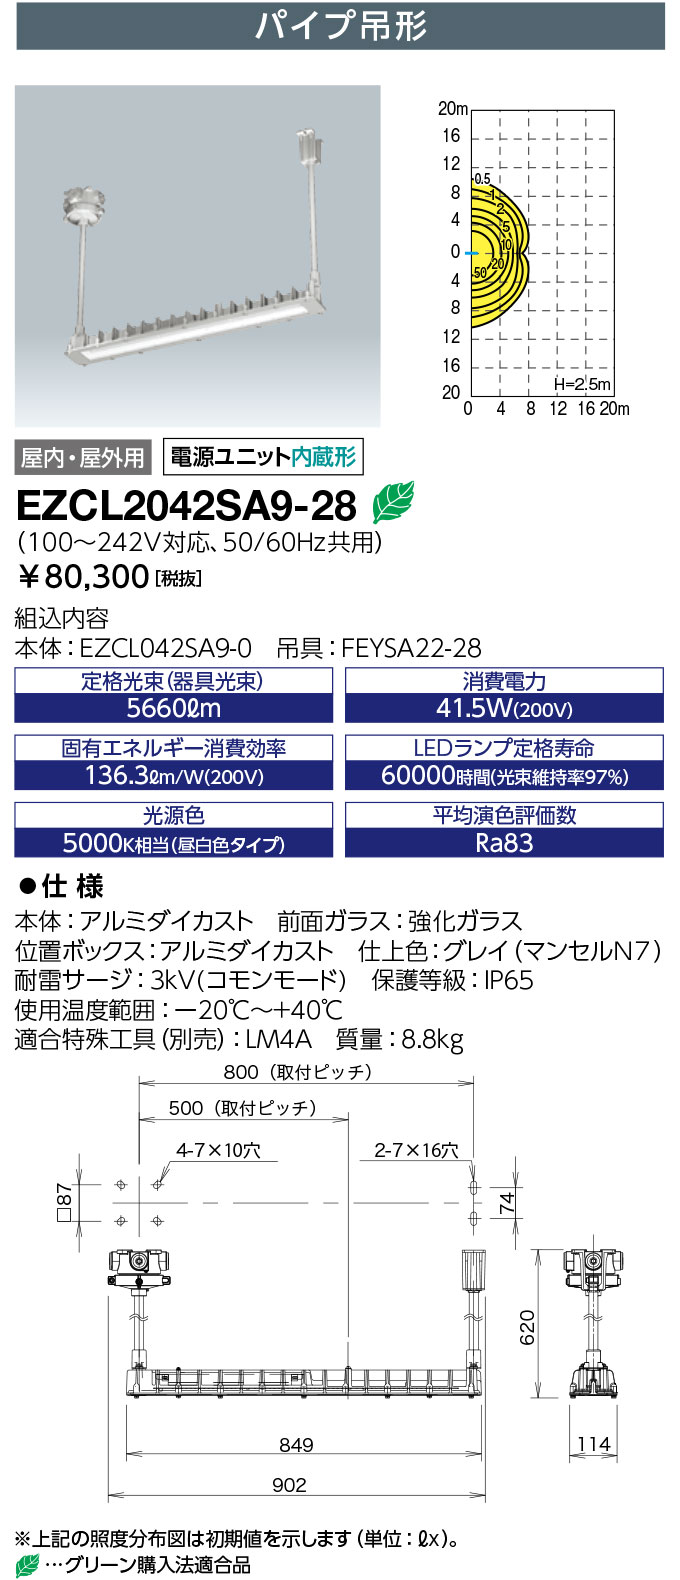 岩崎電気 EZCL2042SA9-28 レディオック 密閉形LED照明器具 〈蛍光灯